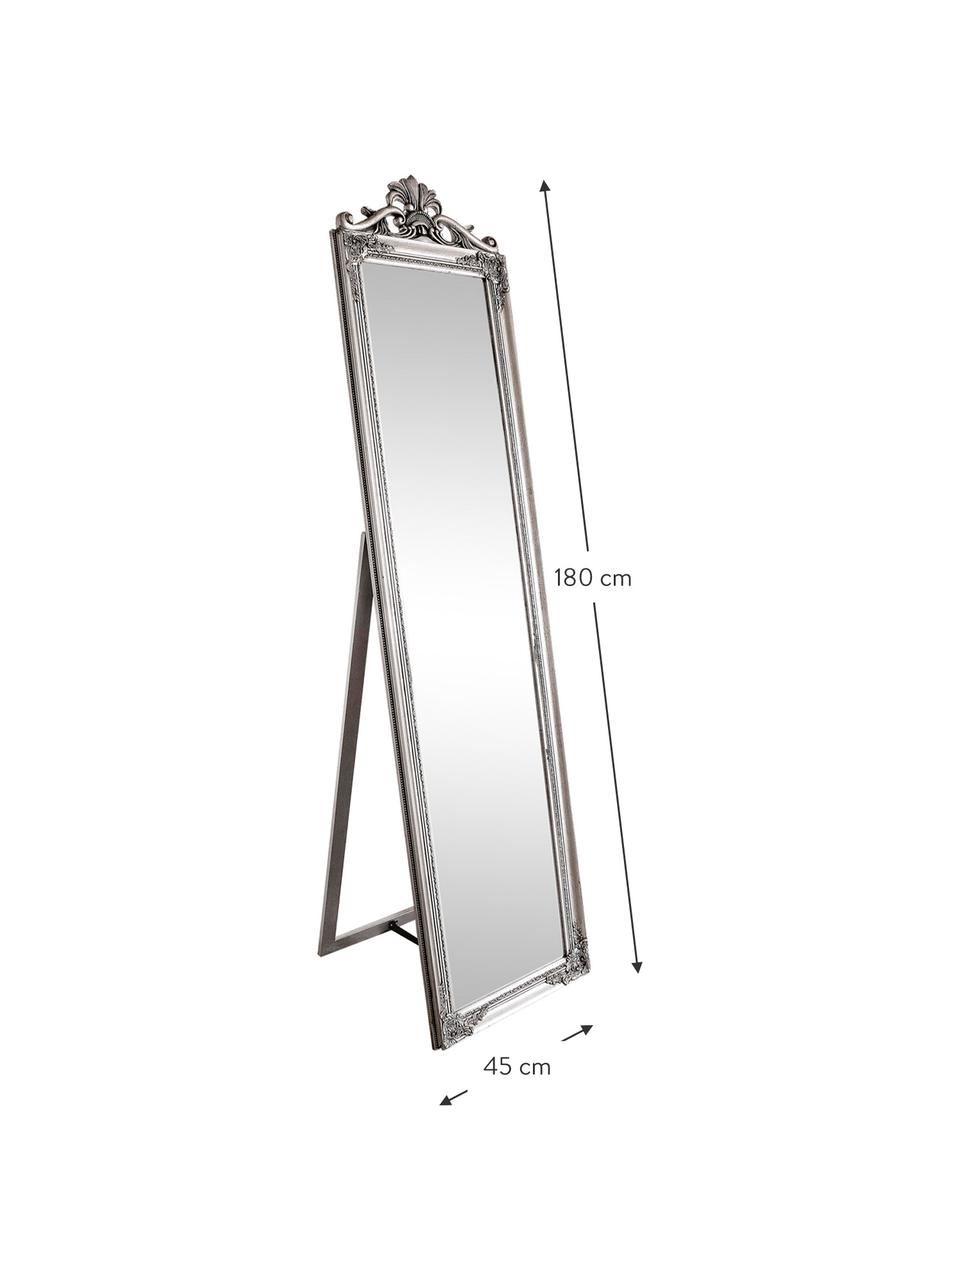 Standspiegel Miro mit silbernem Holzrahmen, Rahmen: Holz, beschichtet, Spiegelfläche: Spiegelglas, Silberfarben, B 45 x H 180 cm